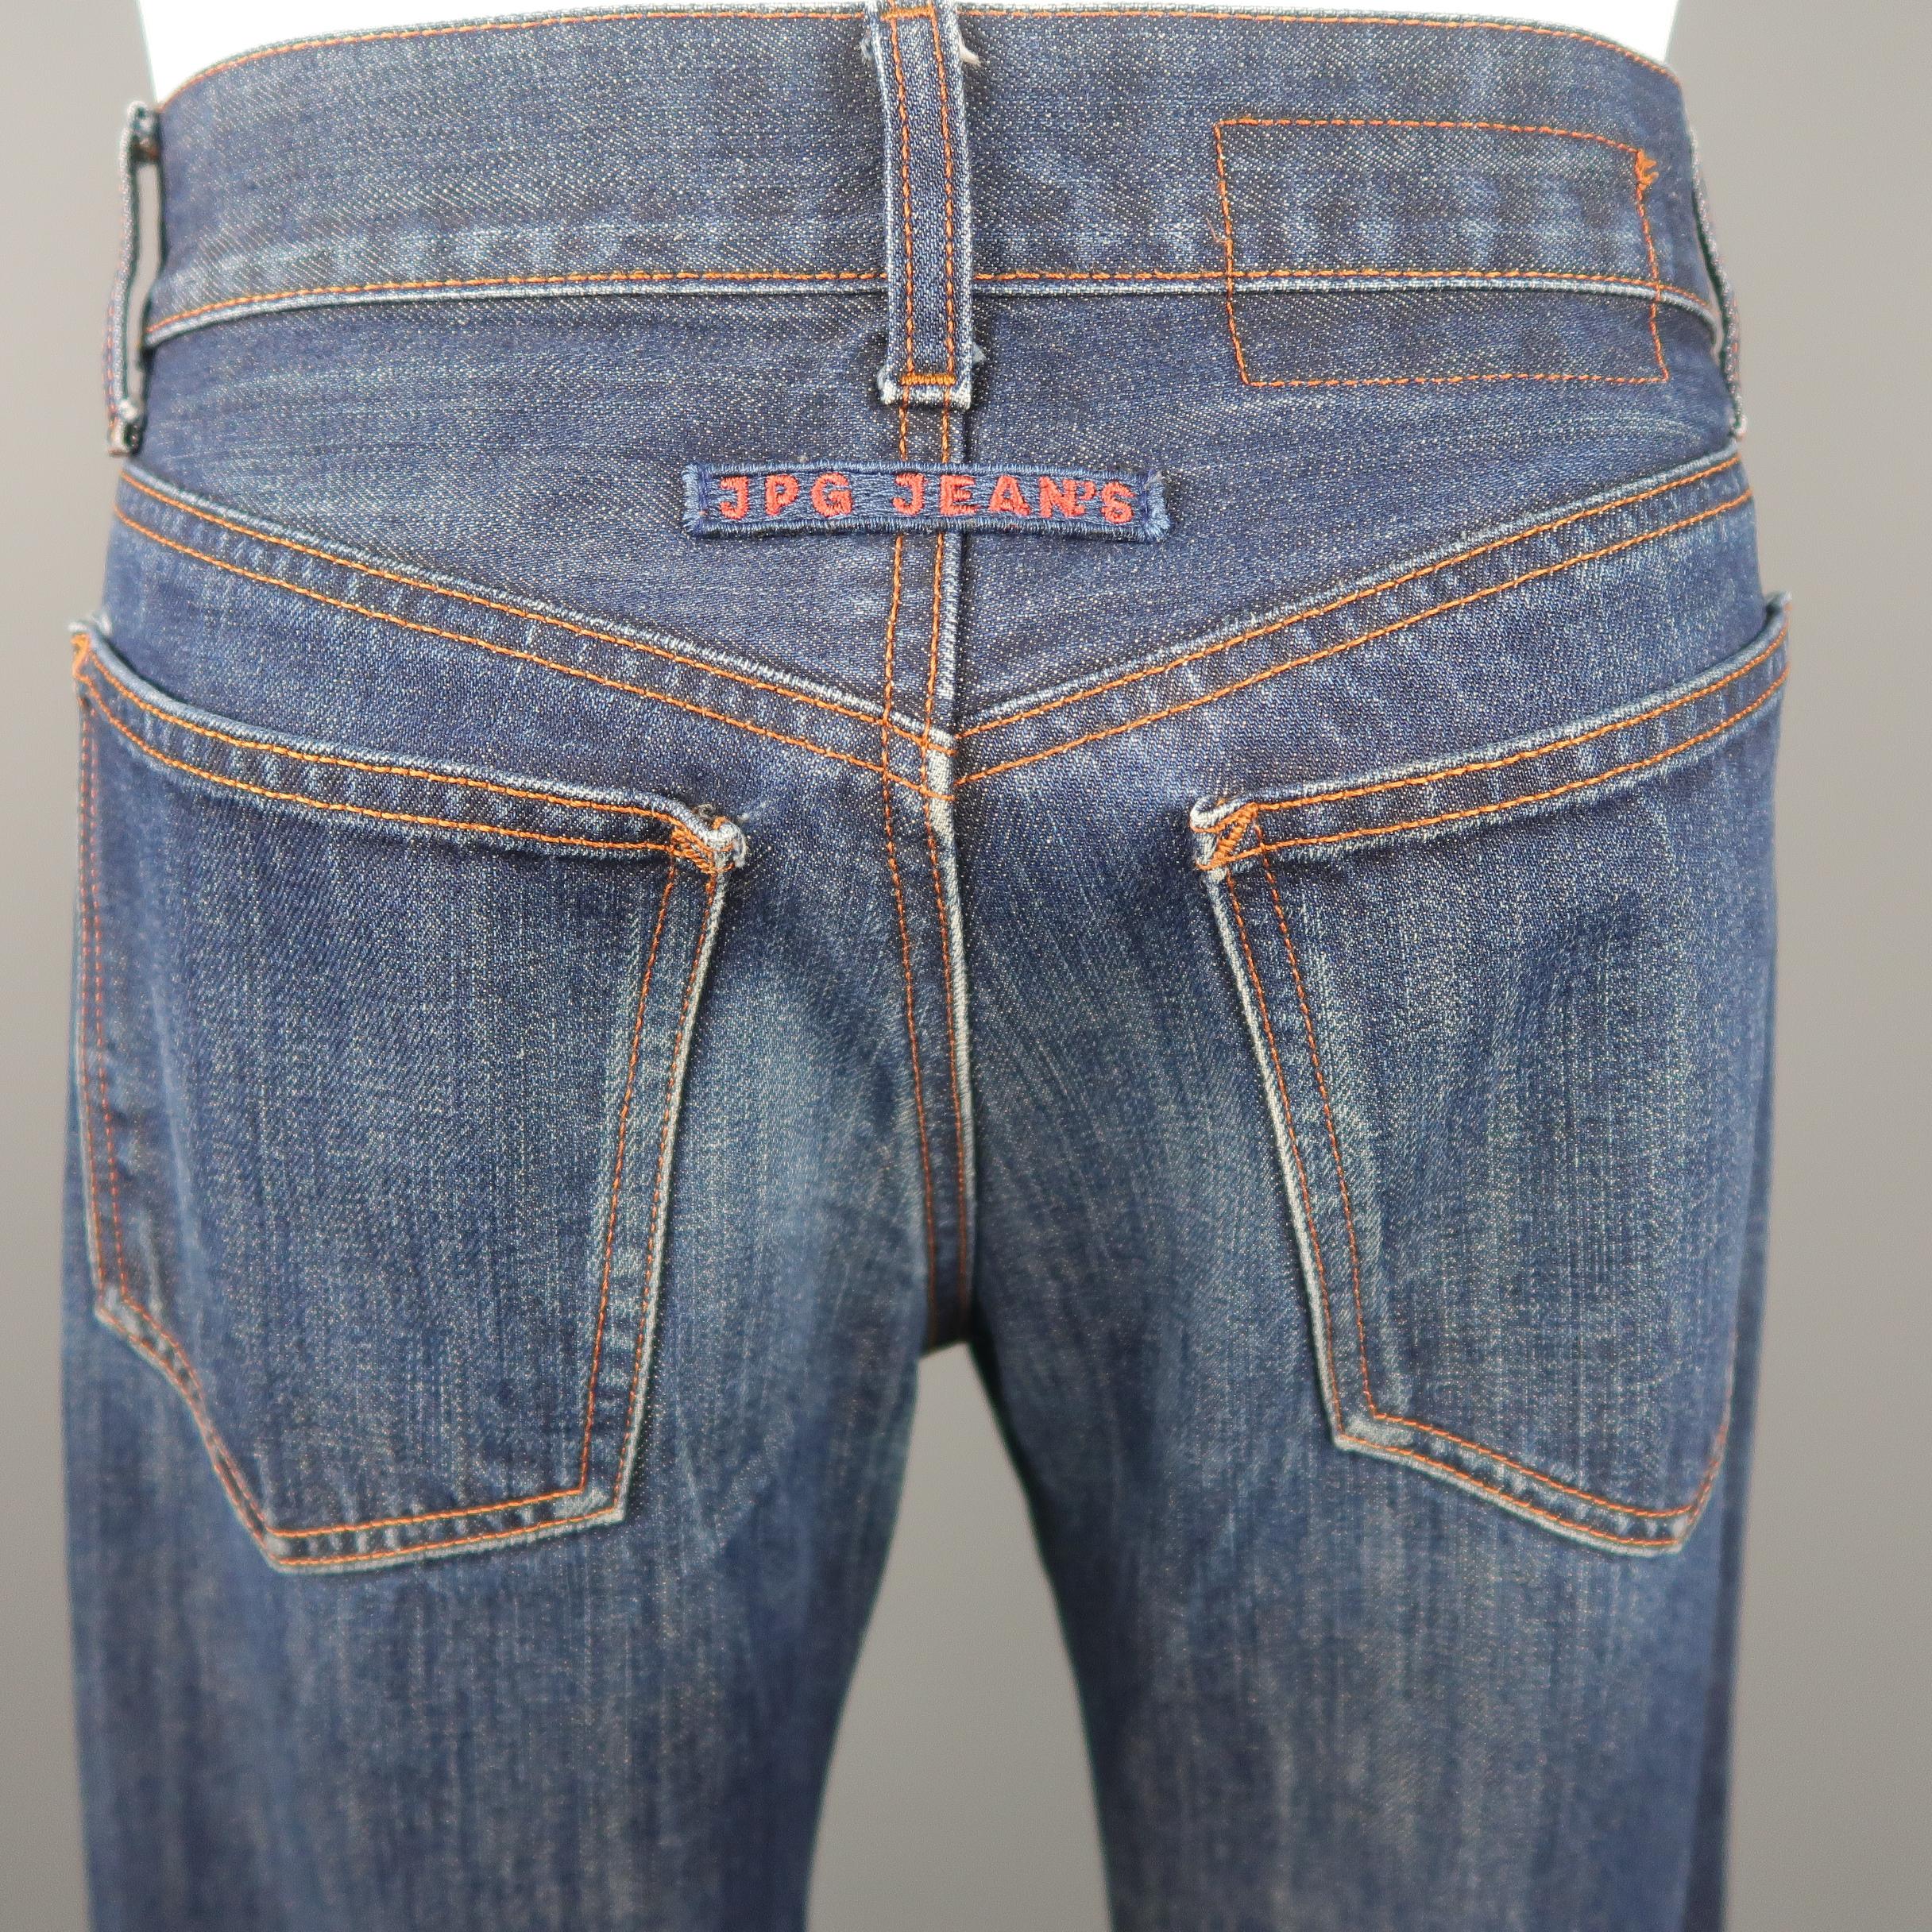 Women's or Men's JEAN PAUL GAULTIER JPG JEANS Size 31 Dark Wash Oversized Cuff Jeans